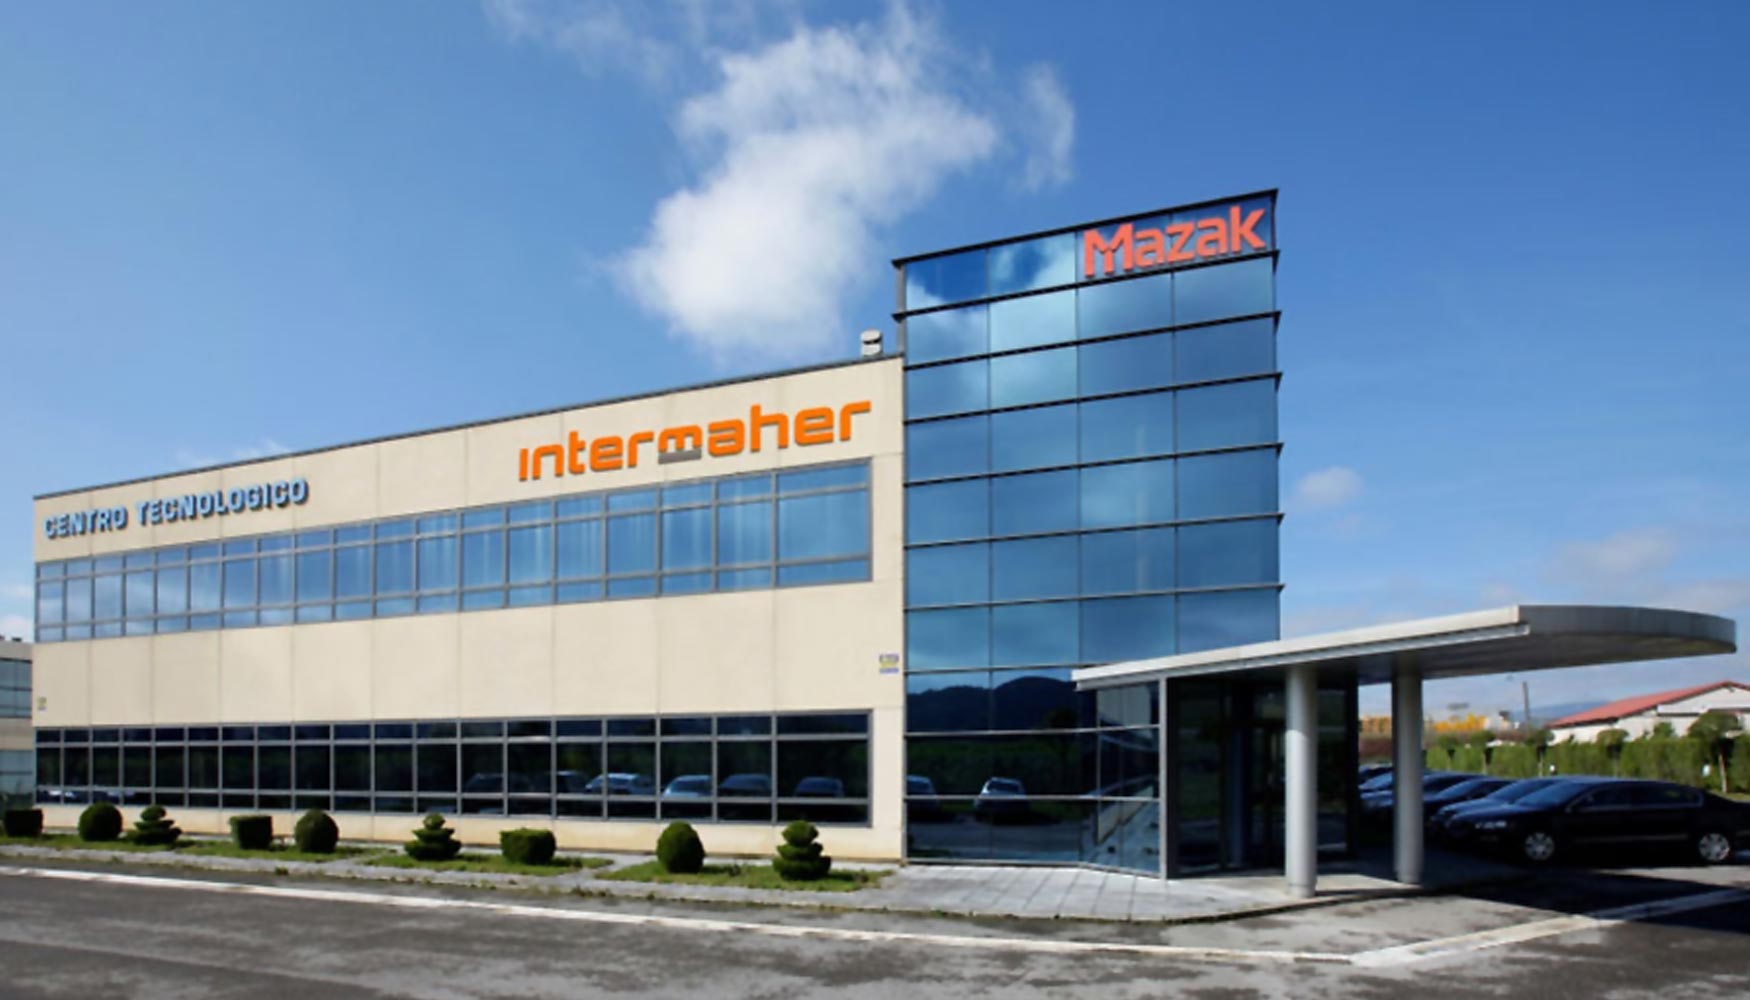 Instalaciones de Intermaher en Legutiano, donde tiene instalado el centro tecnolgico Intermaher-Mazak